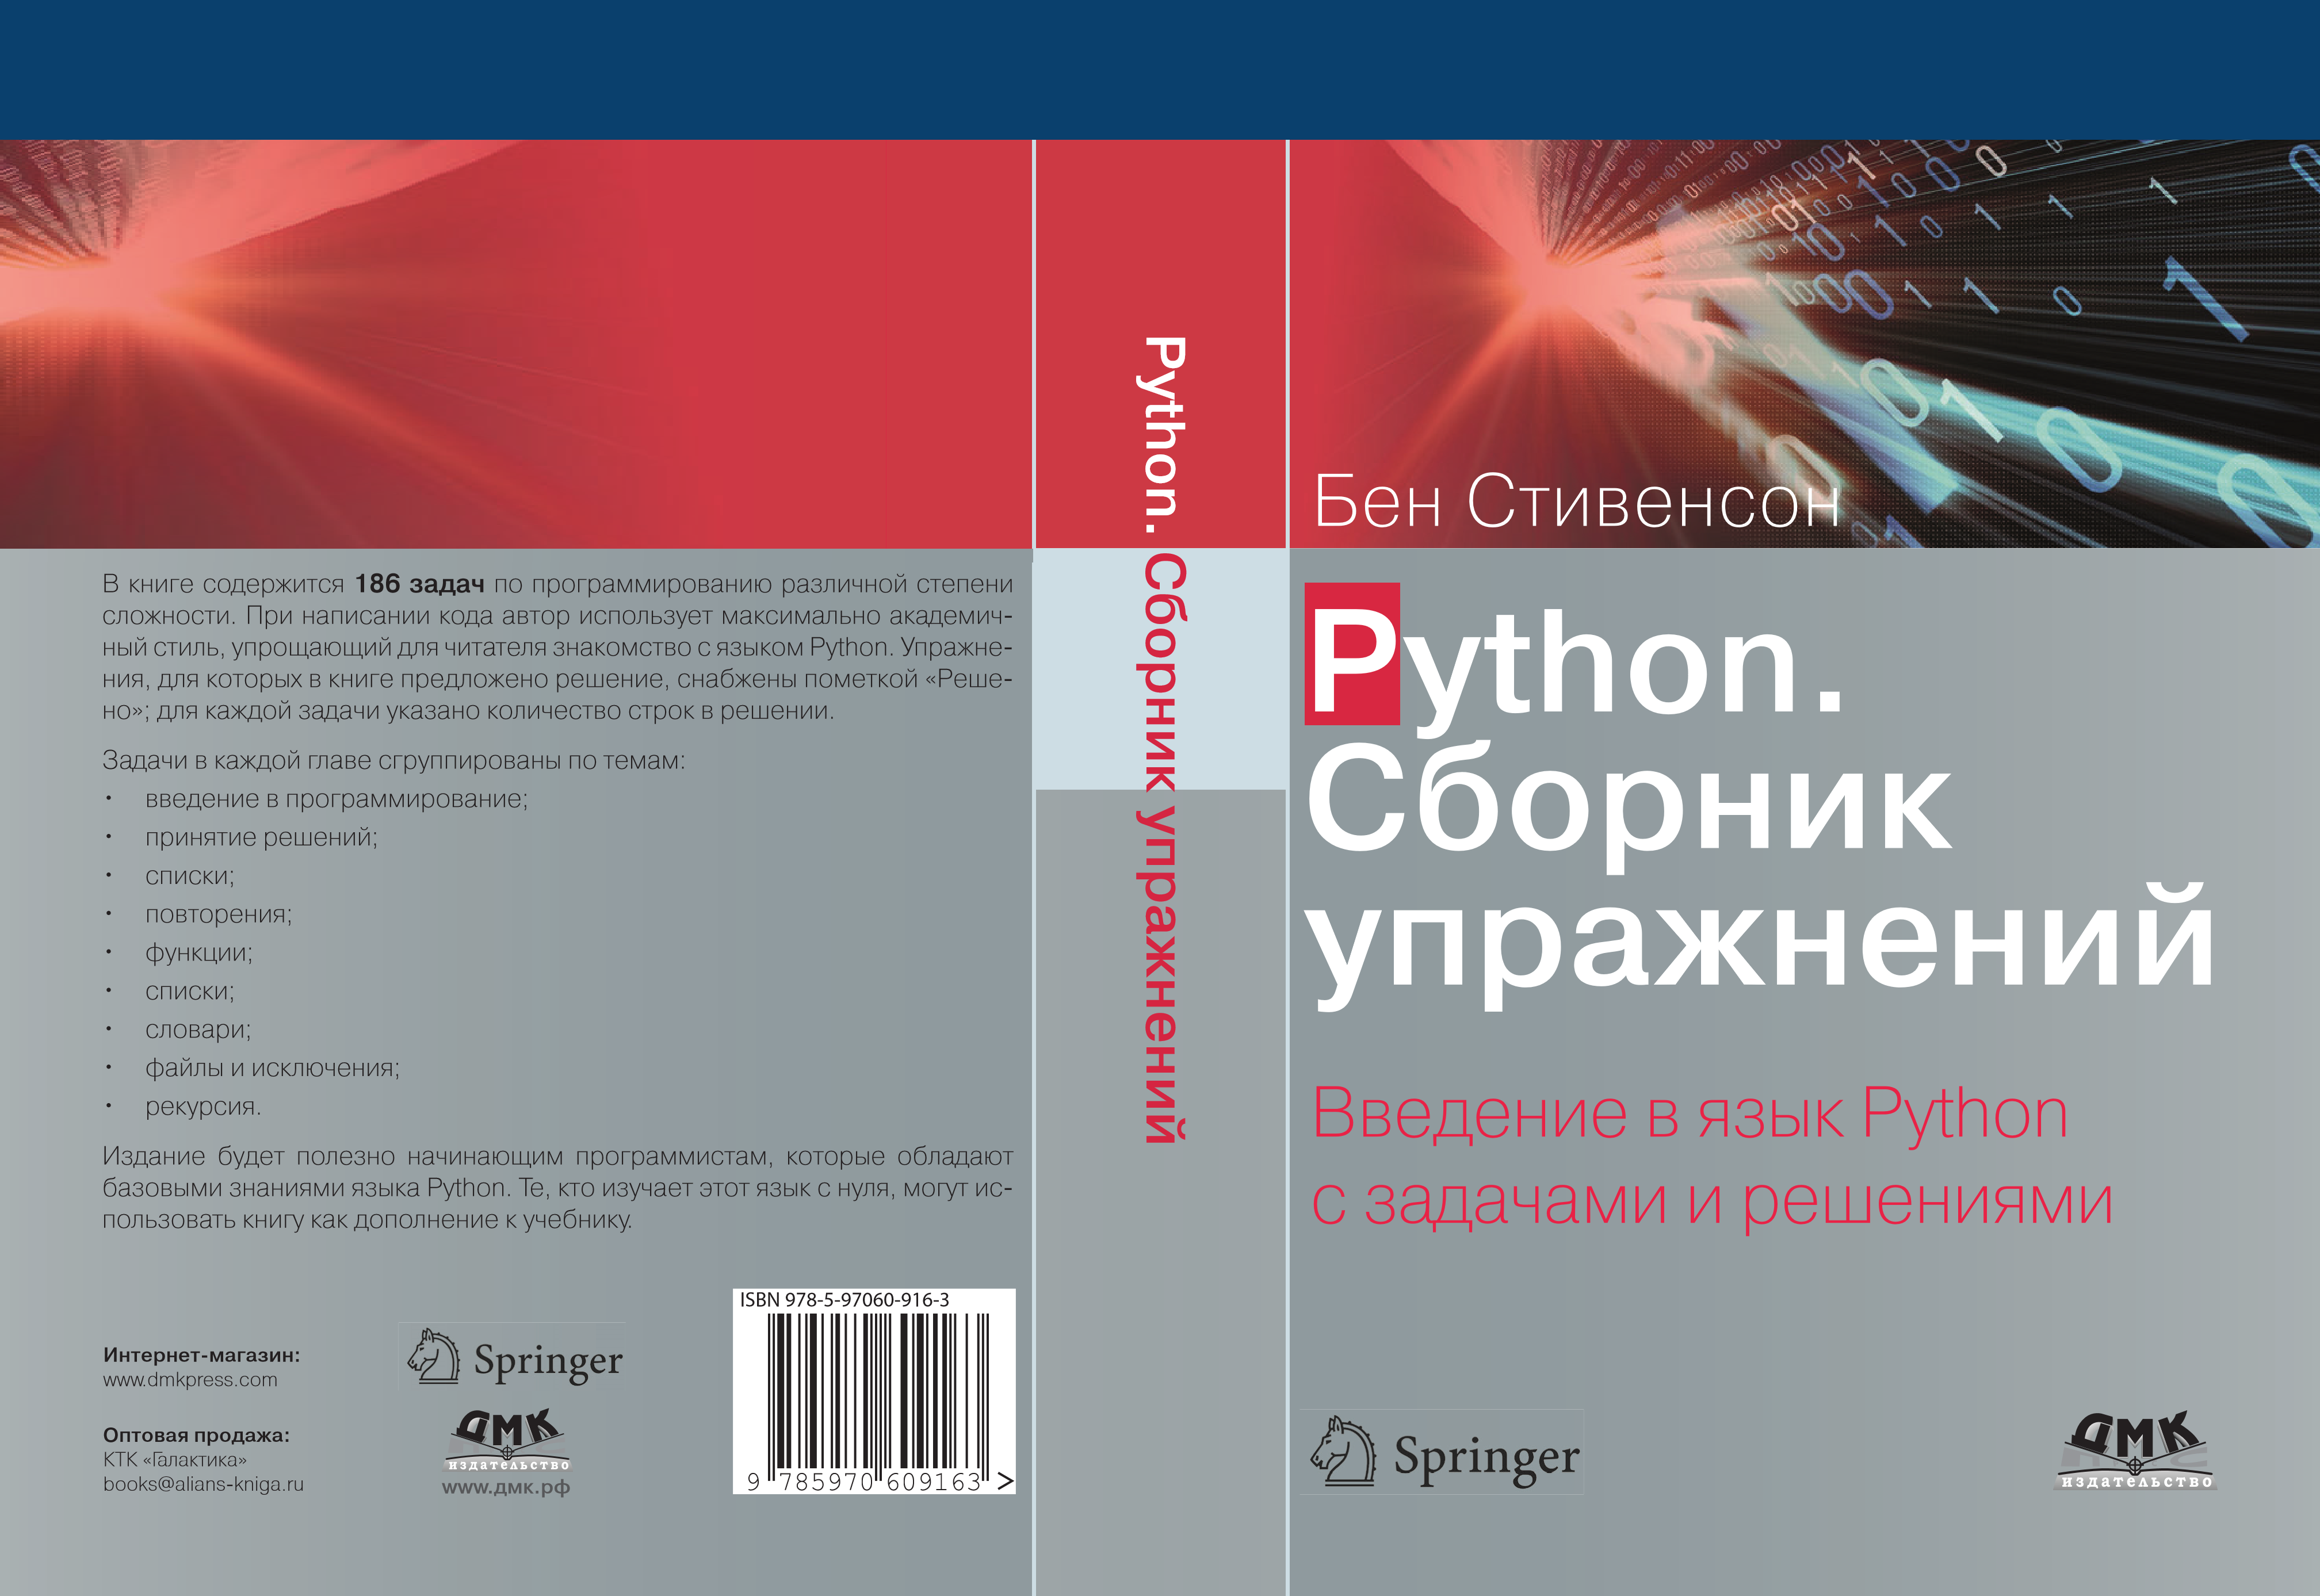 Задачи python книга. Бен Стивенсон сборник упражнений. Python. Сборник упражнения. Книга. Введение в язык Python. Язык Python книга.